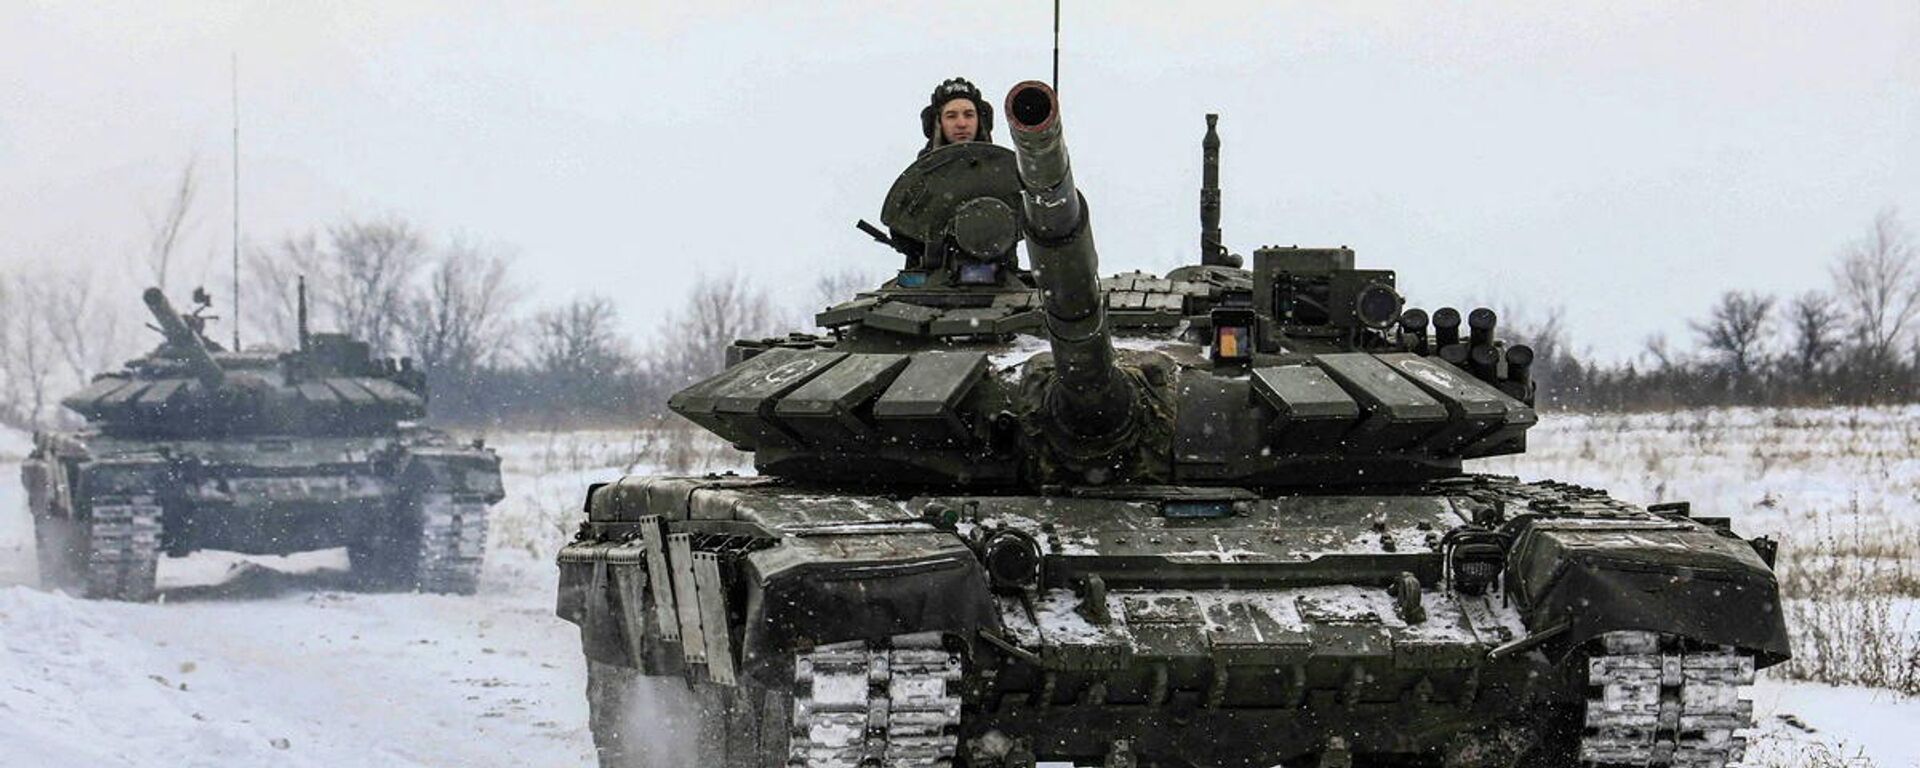 الجنود الروس يقودون الدبابات خلال التدريبات العسكرية في منطقة لينينغراد، روسيا، 14 فبراير 2022. - سبوتنيك عربي, 1920, 20.02.2022